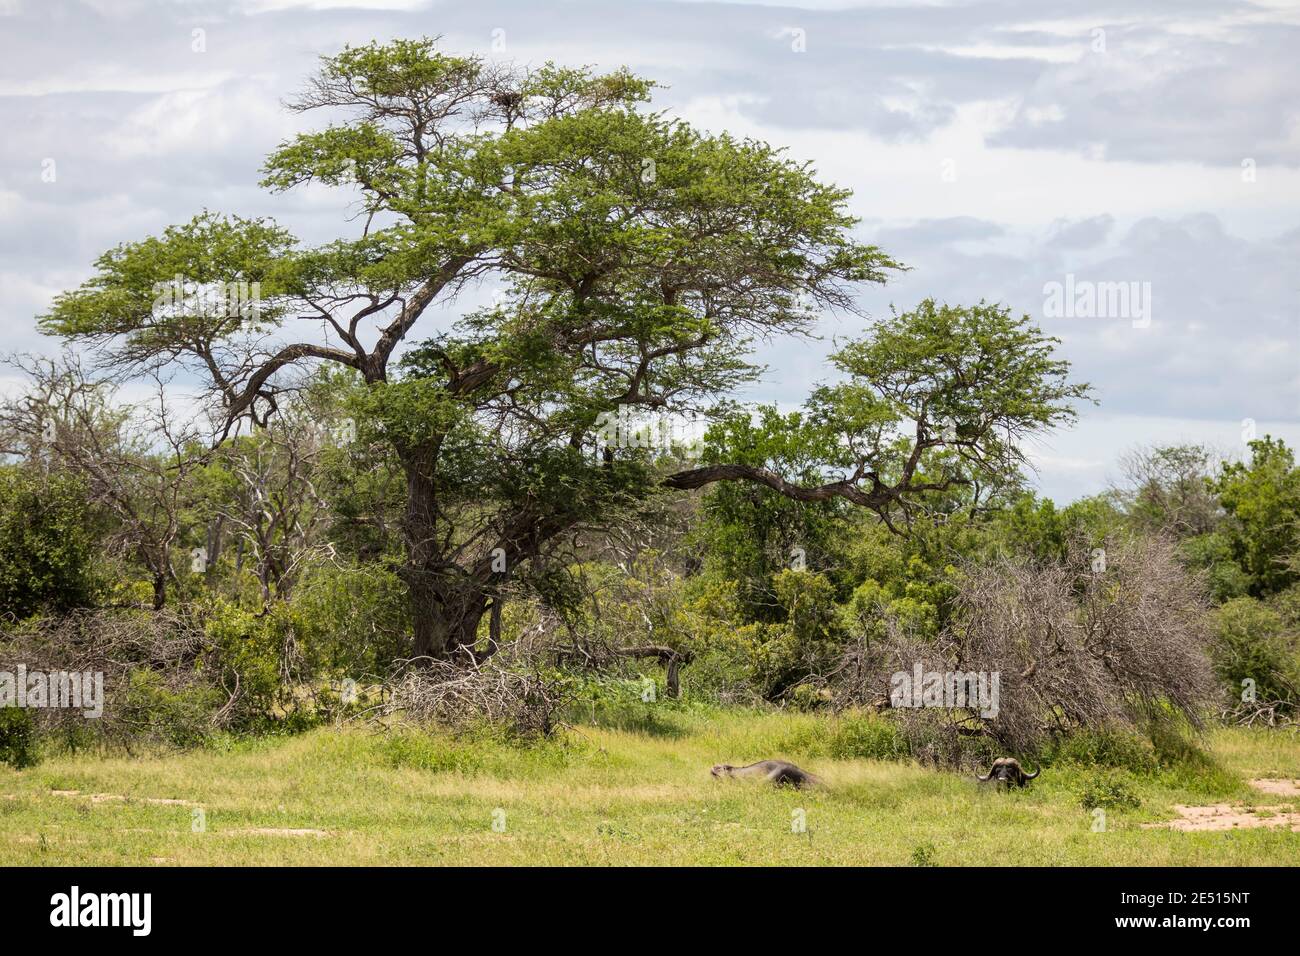 Dans la savane sud-africaine, un buffle se repose sous la voûte d'un acacia géant, parmi les buissons verts Banque D'Images